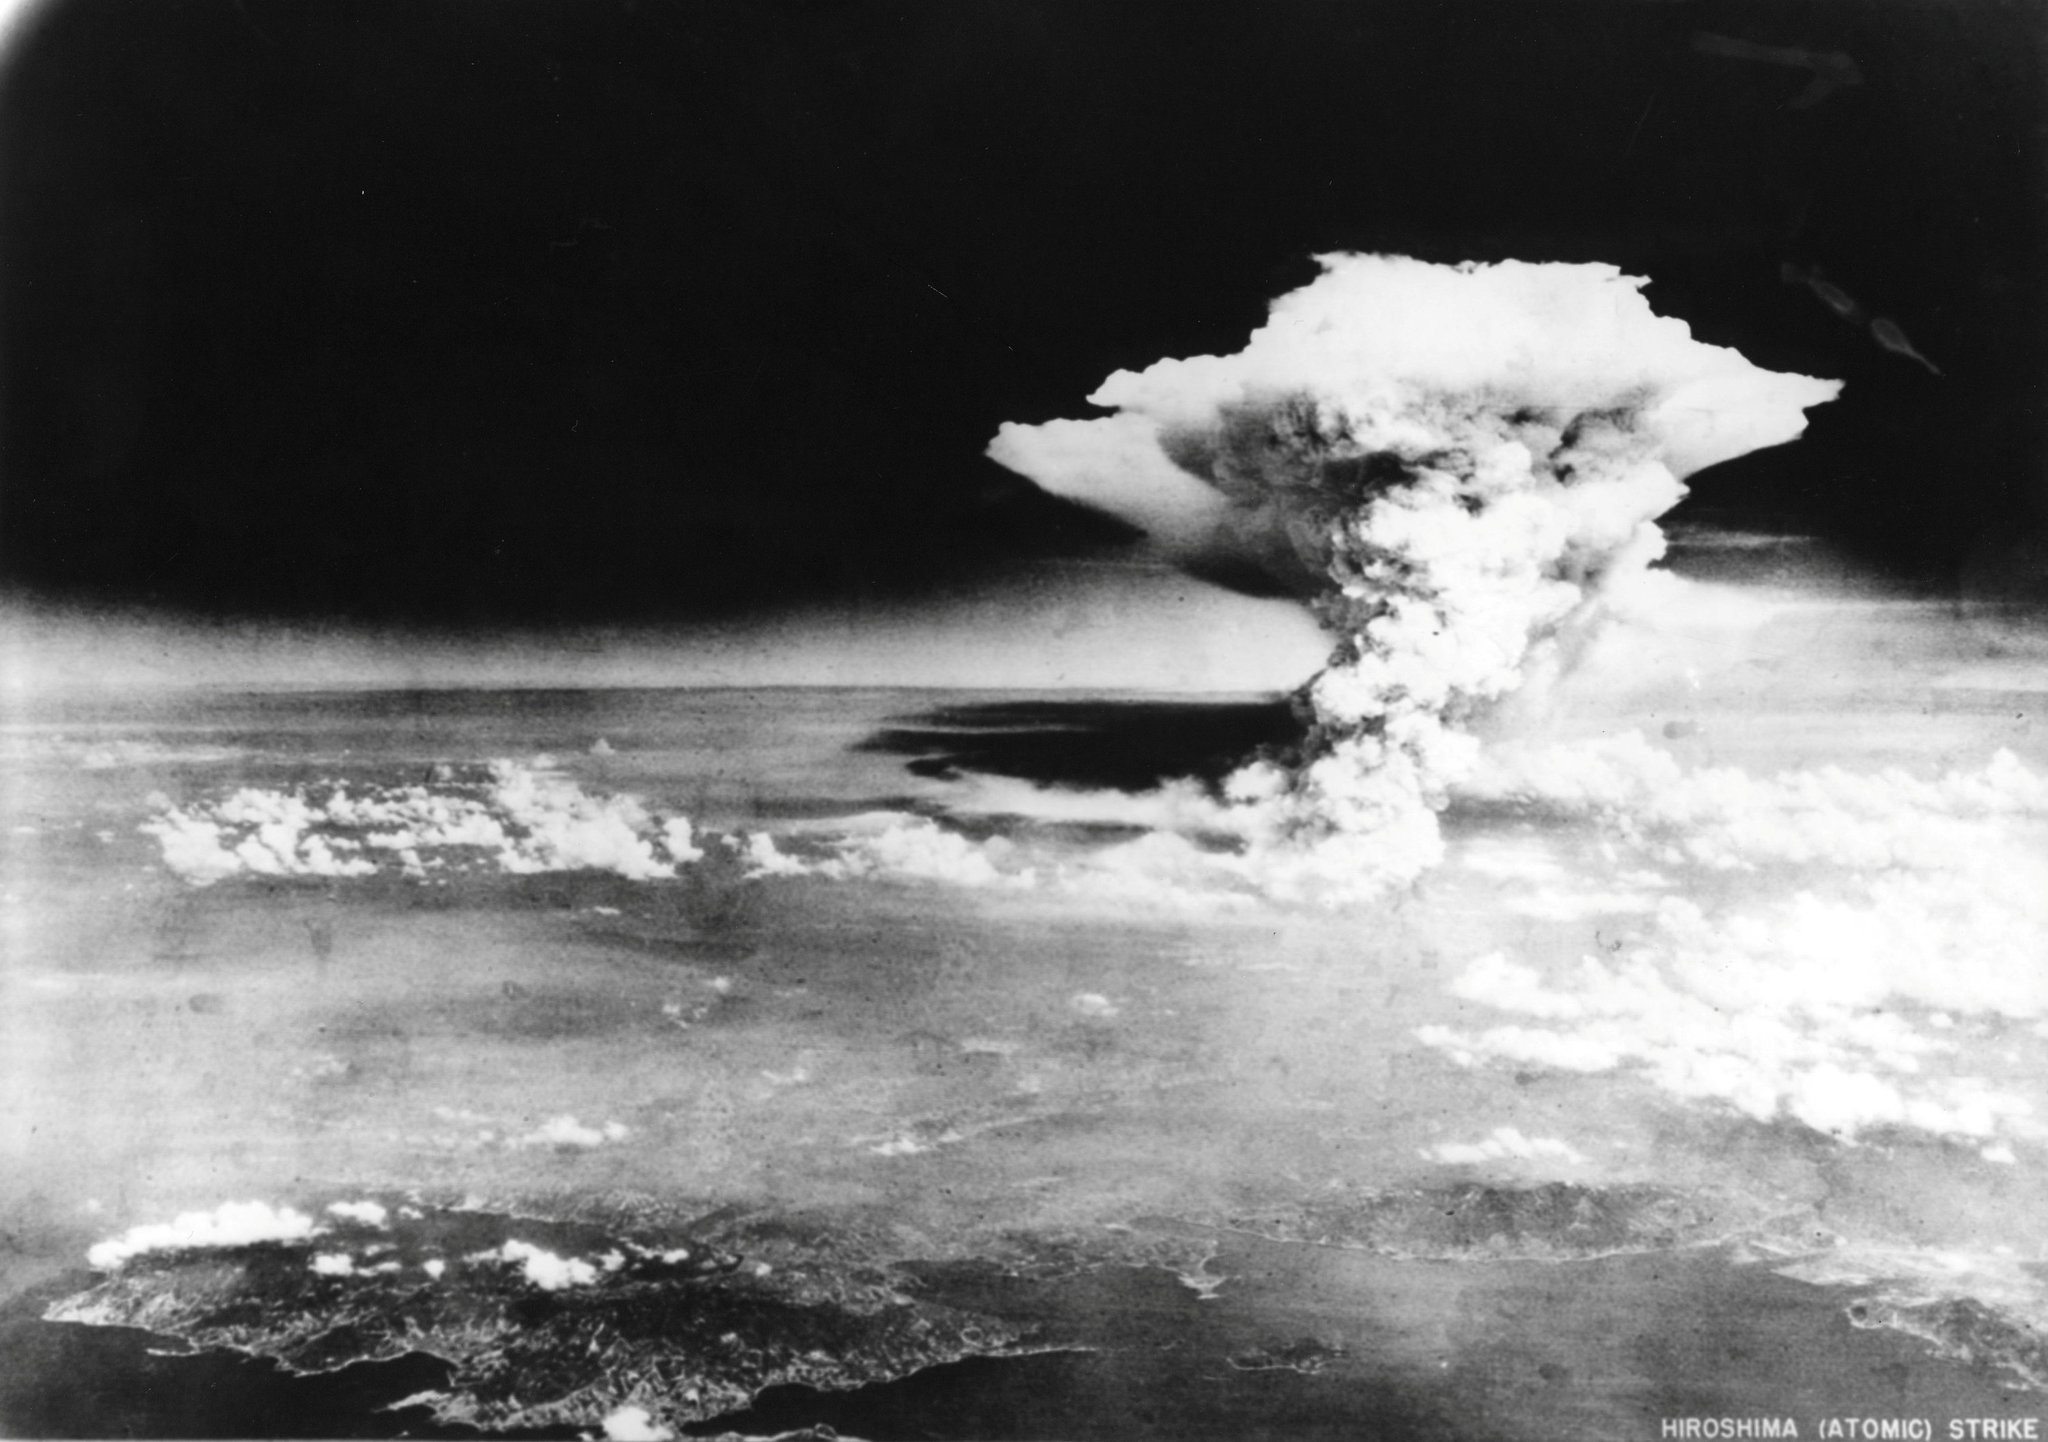 Cette photo ne montre pas le champignon atomique d’Hiroshima